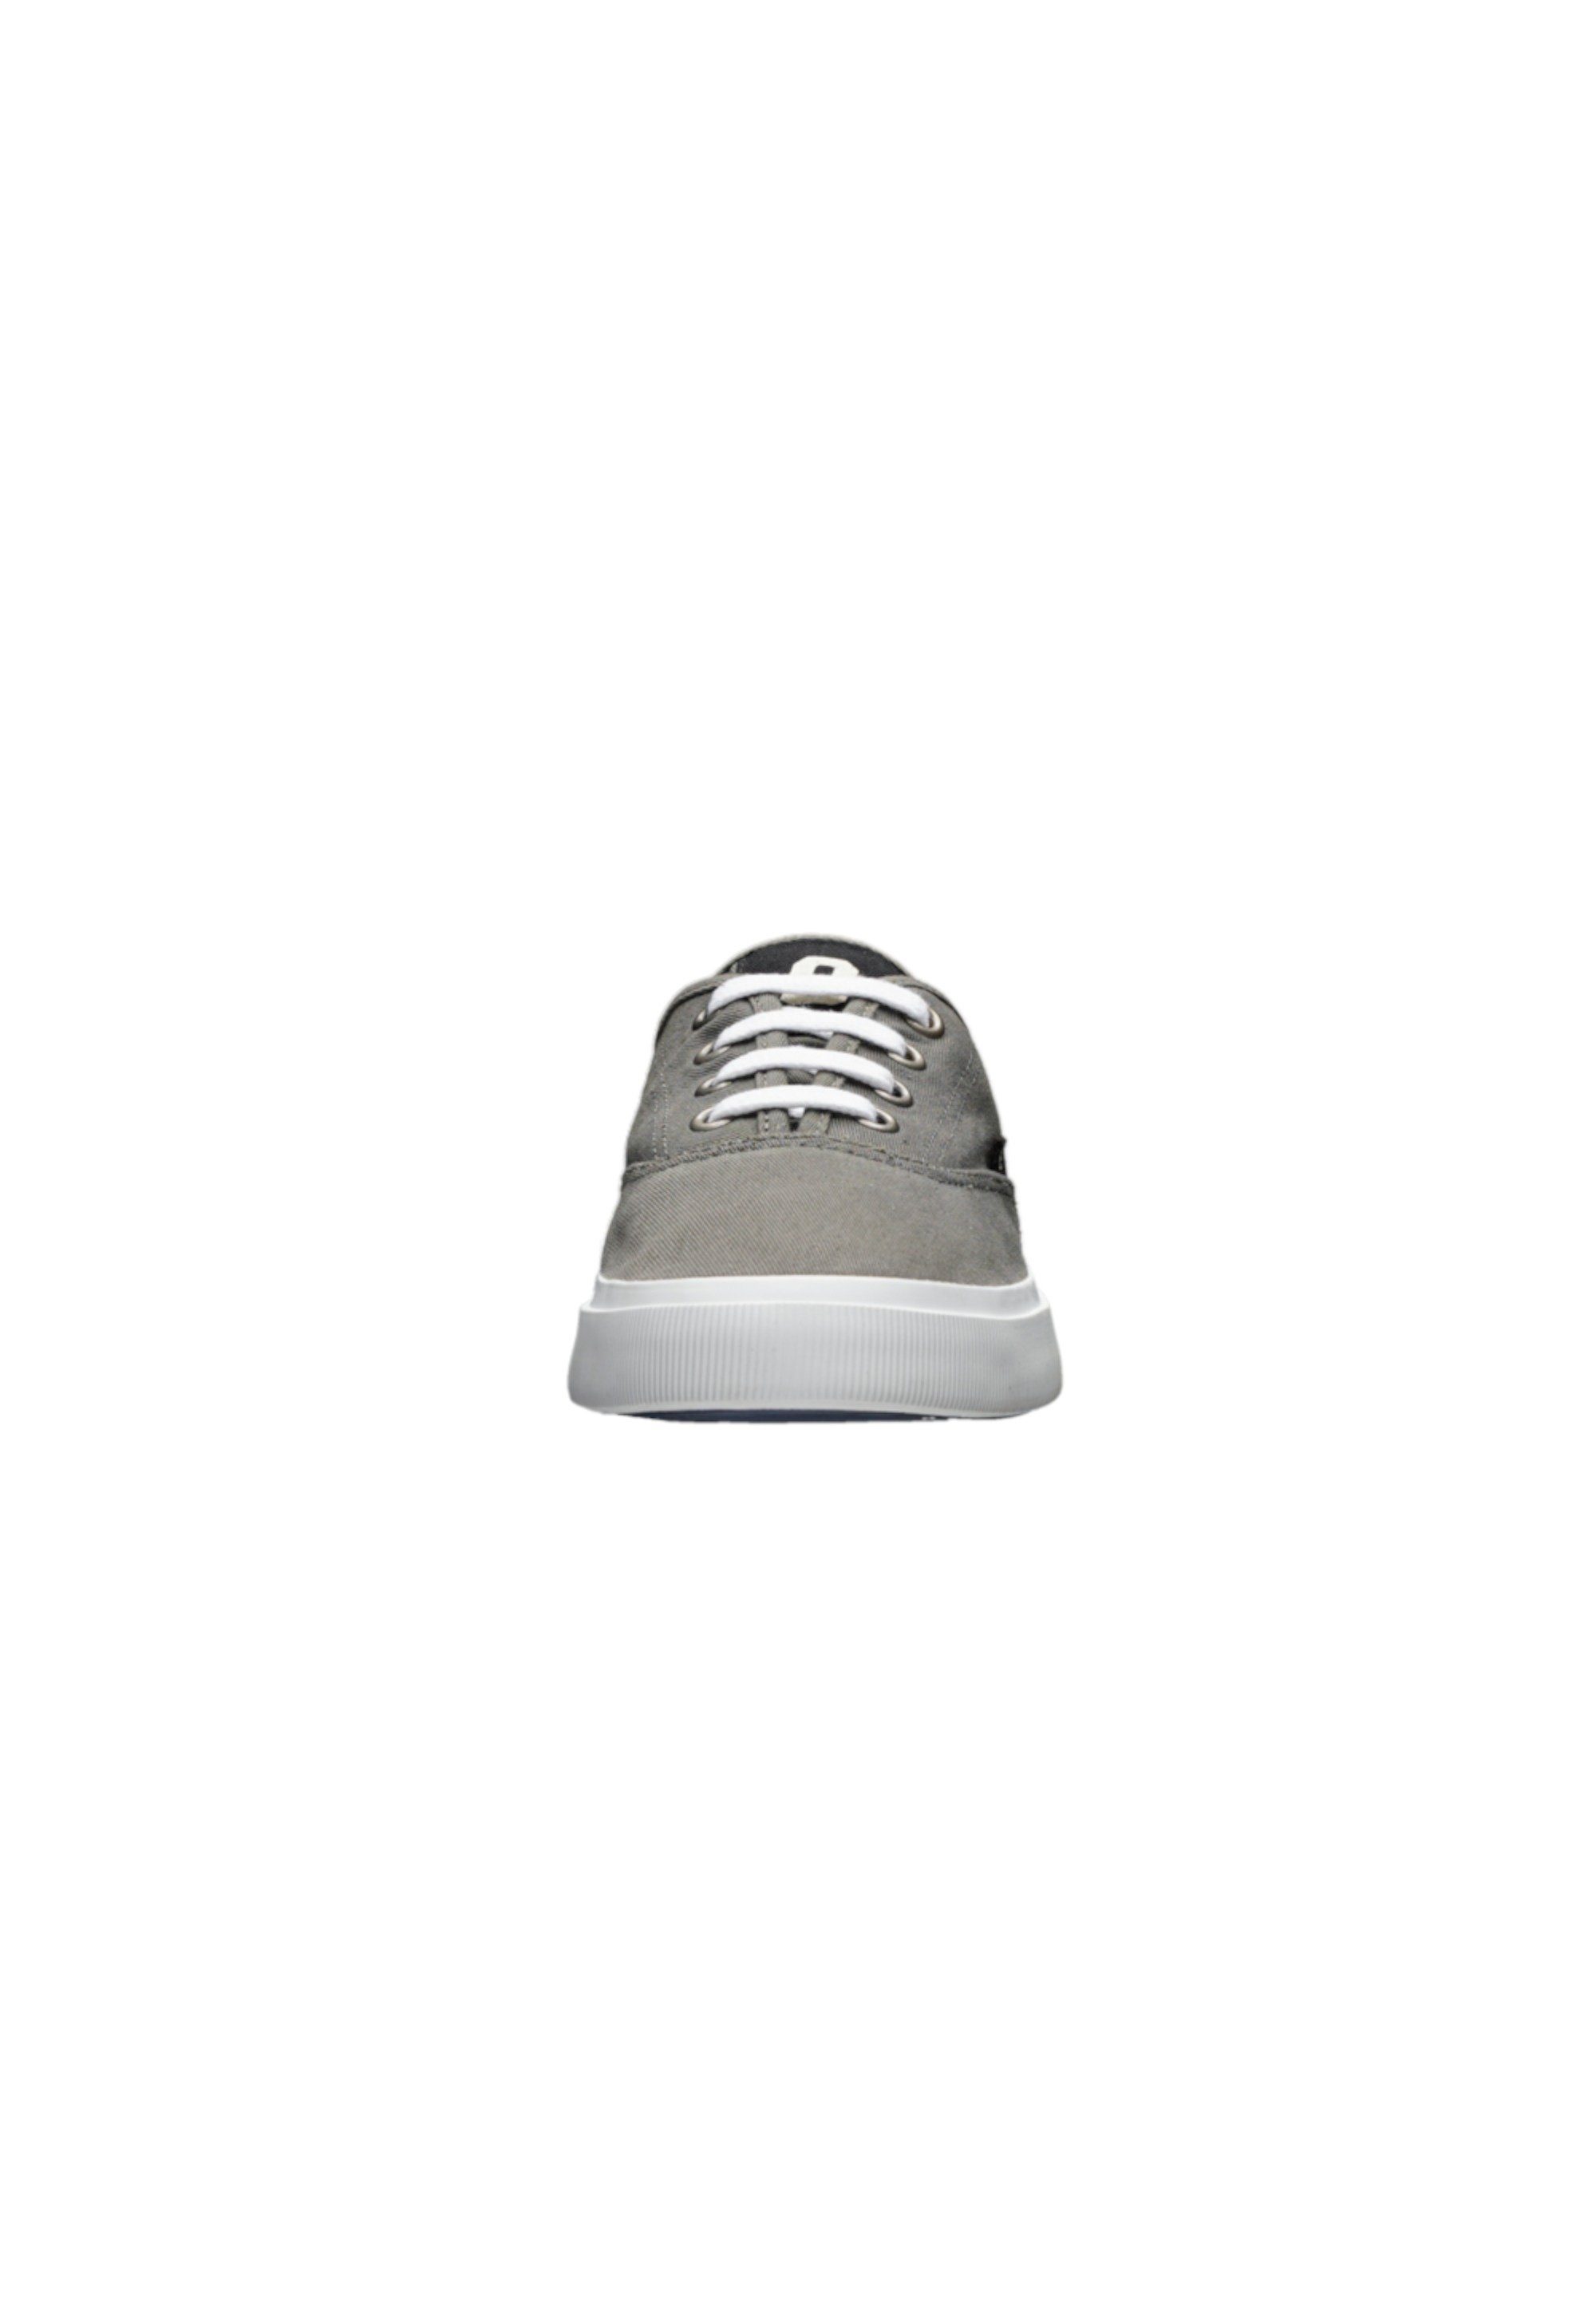 ETHLETIC Kole Donkey Fairtrade Sneaker Grey Produkt